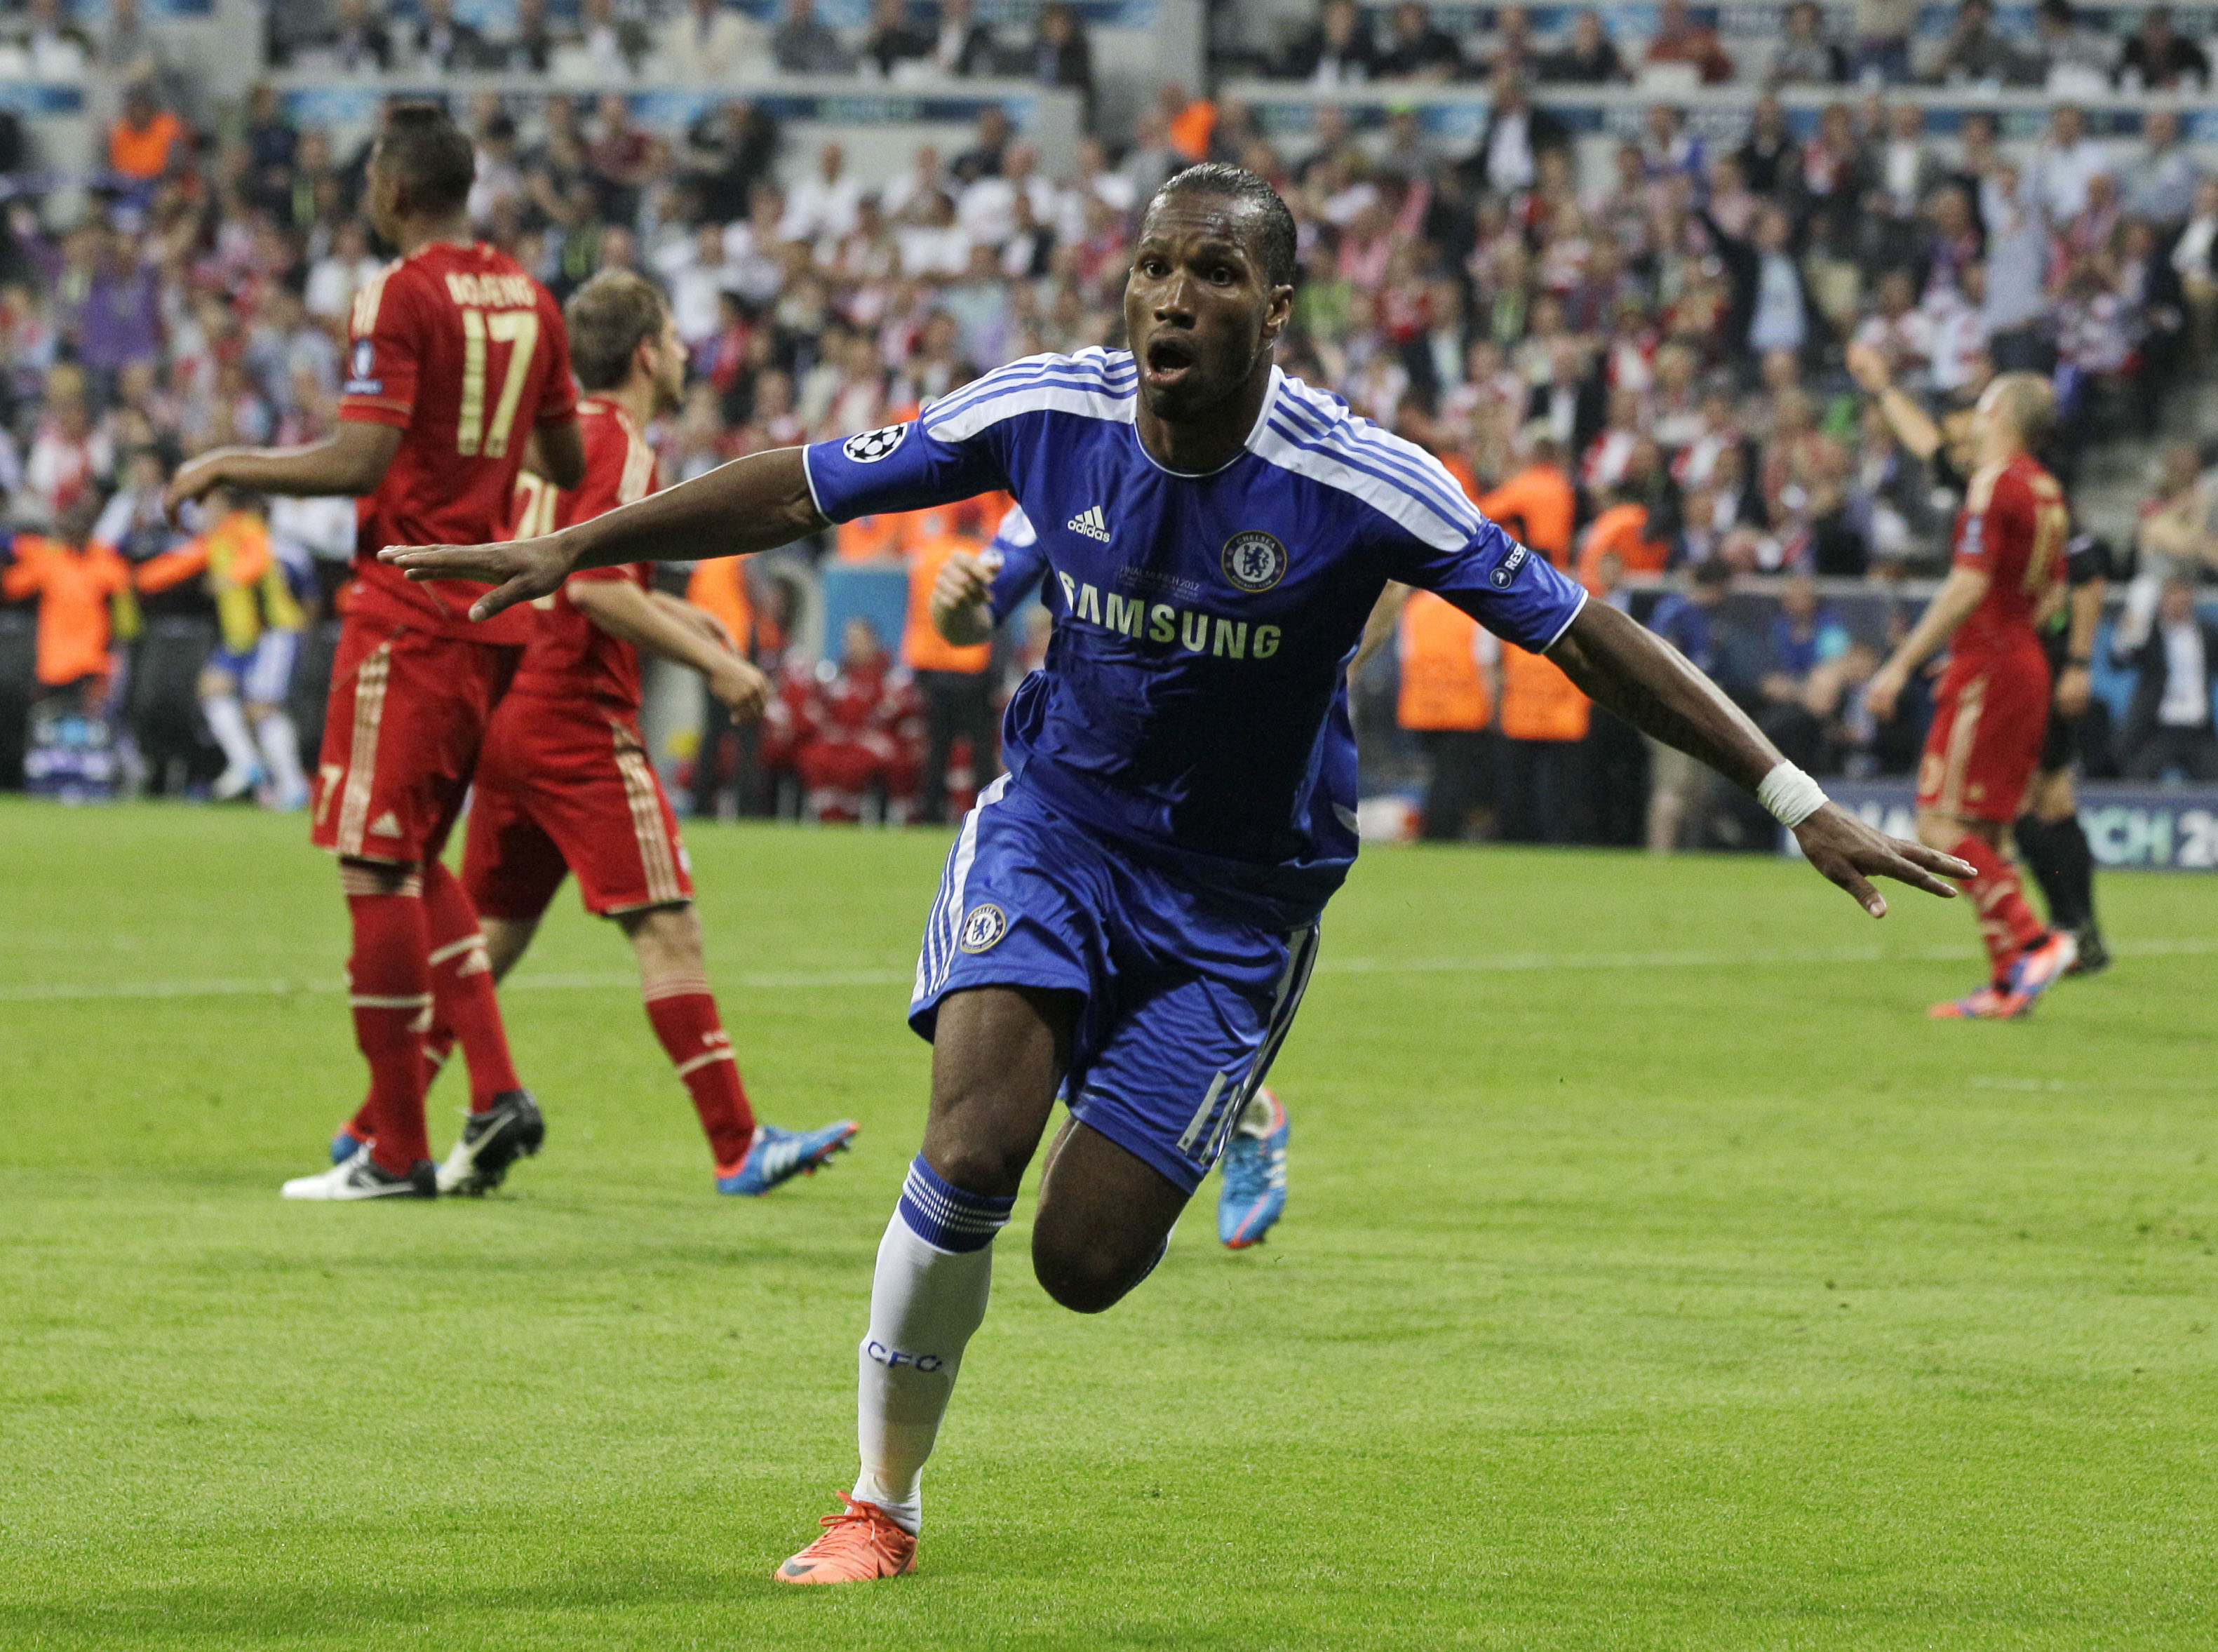 Drogba firar sin 1–1-kvittering i den 88:e minuten. Målet tog Chelsea in i matchen igen och bäddade för klubbens första CL-titel.